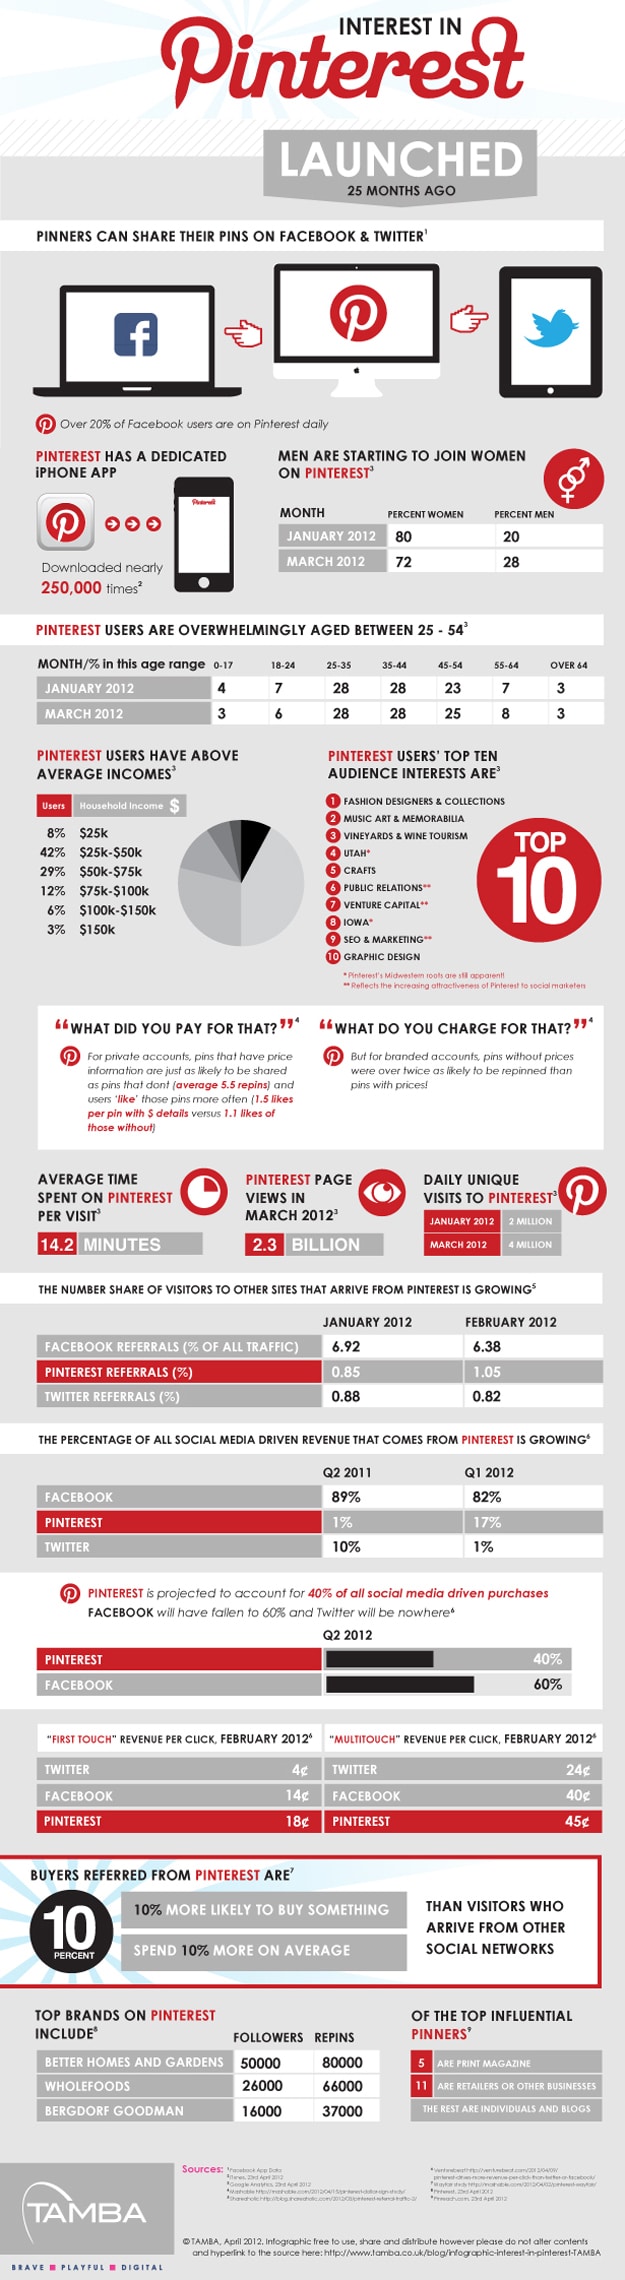 Pinterest-Outperforms-Twitter-Facebook-Google+